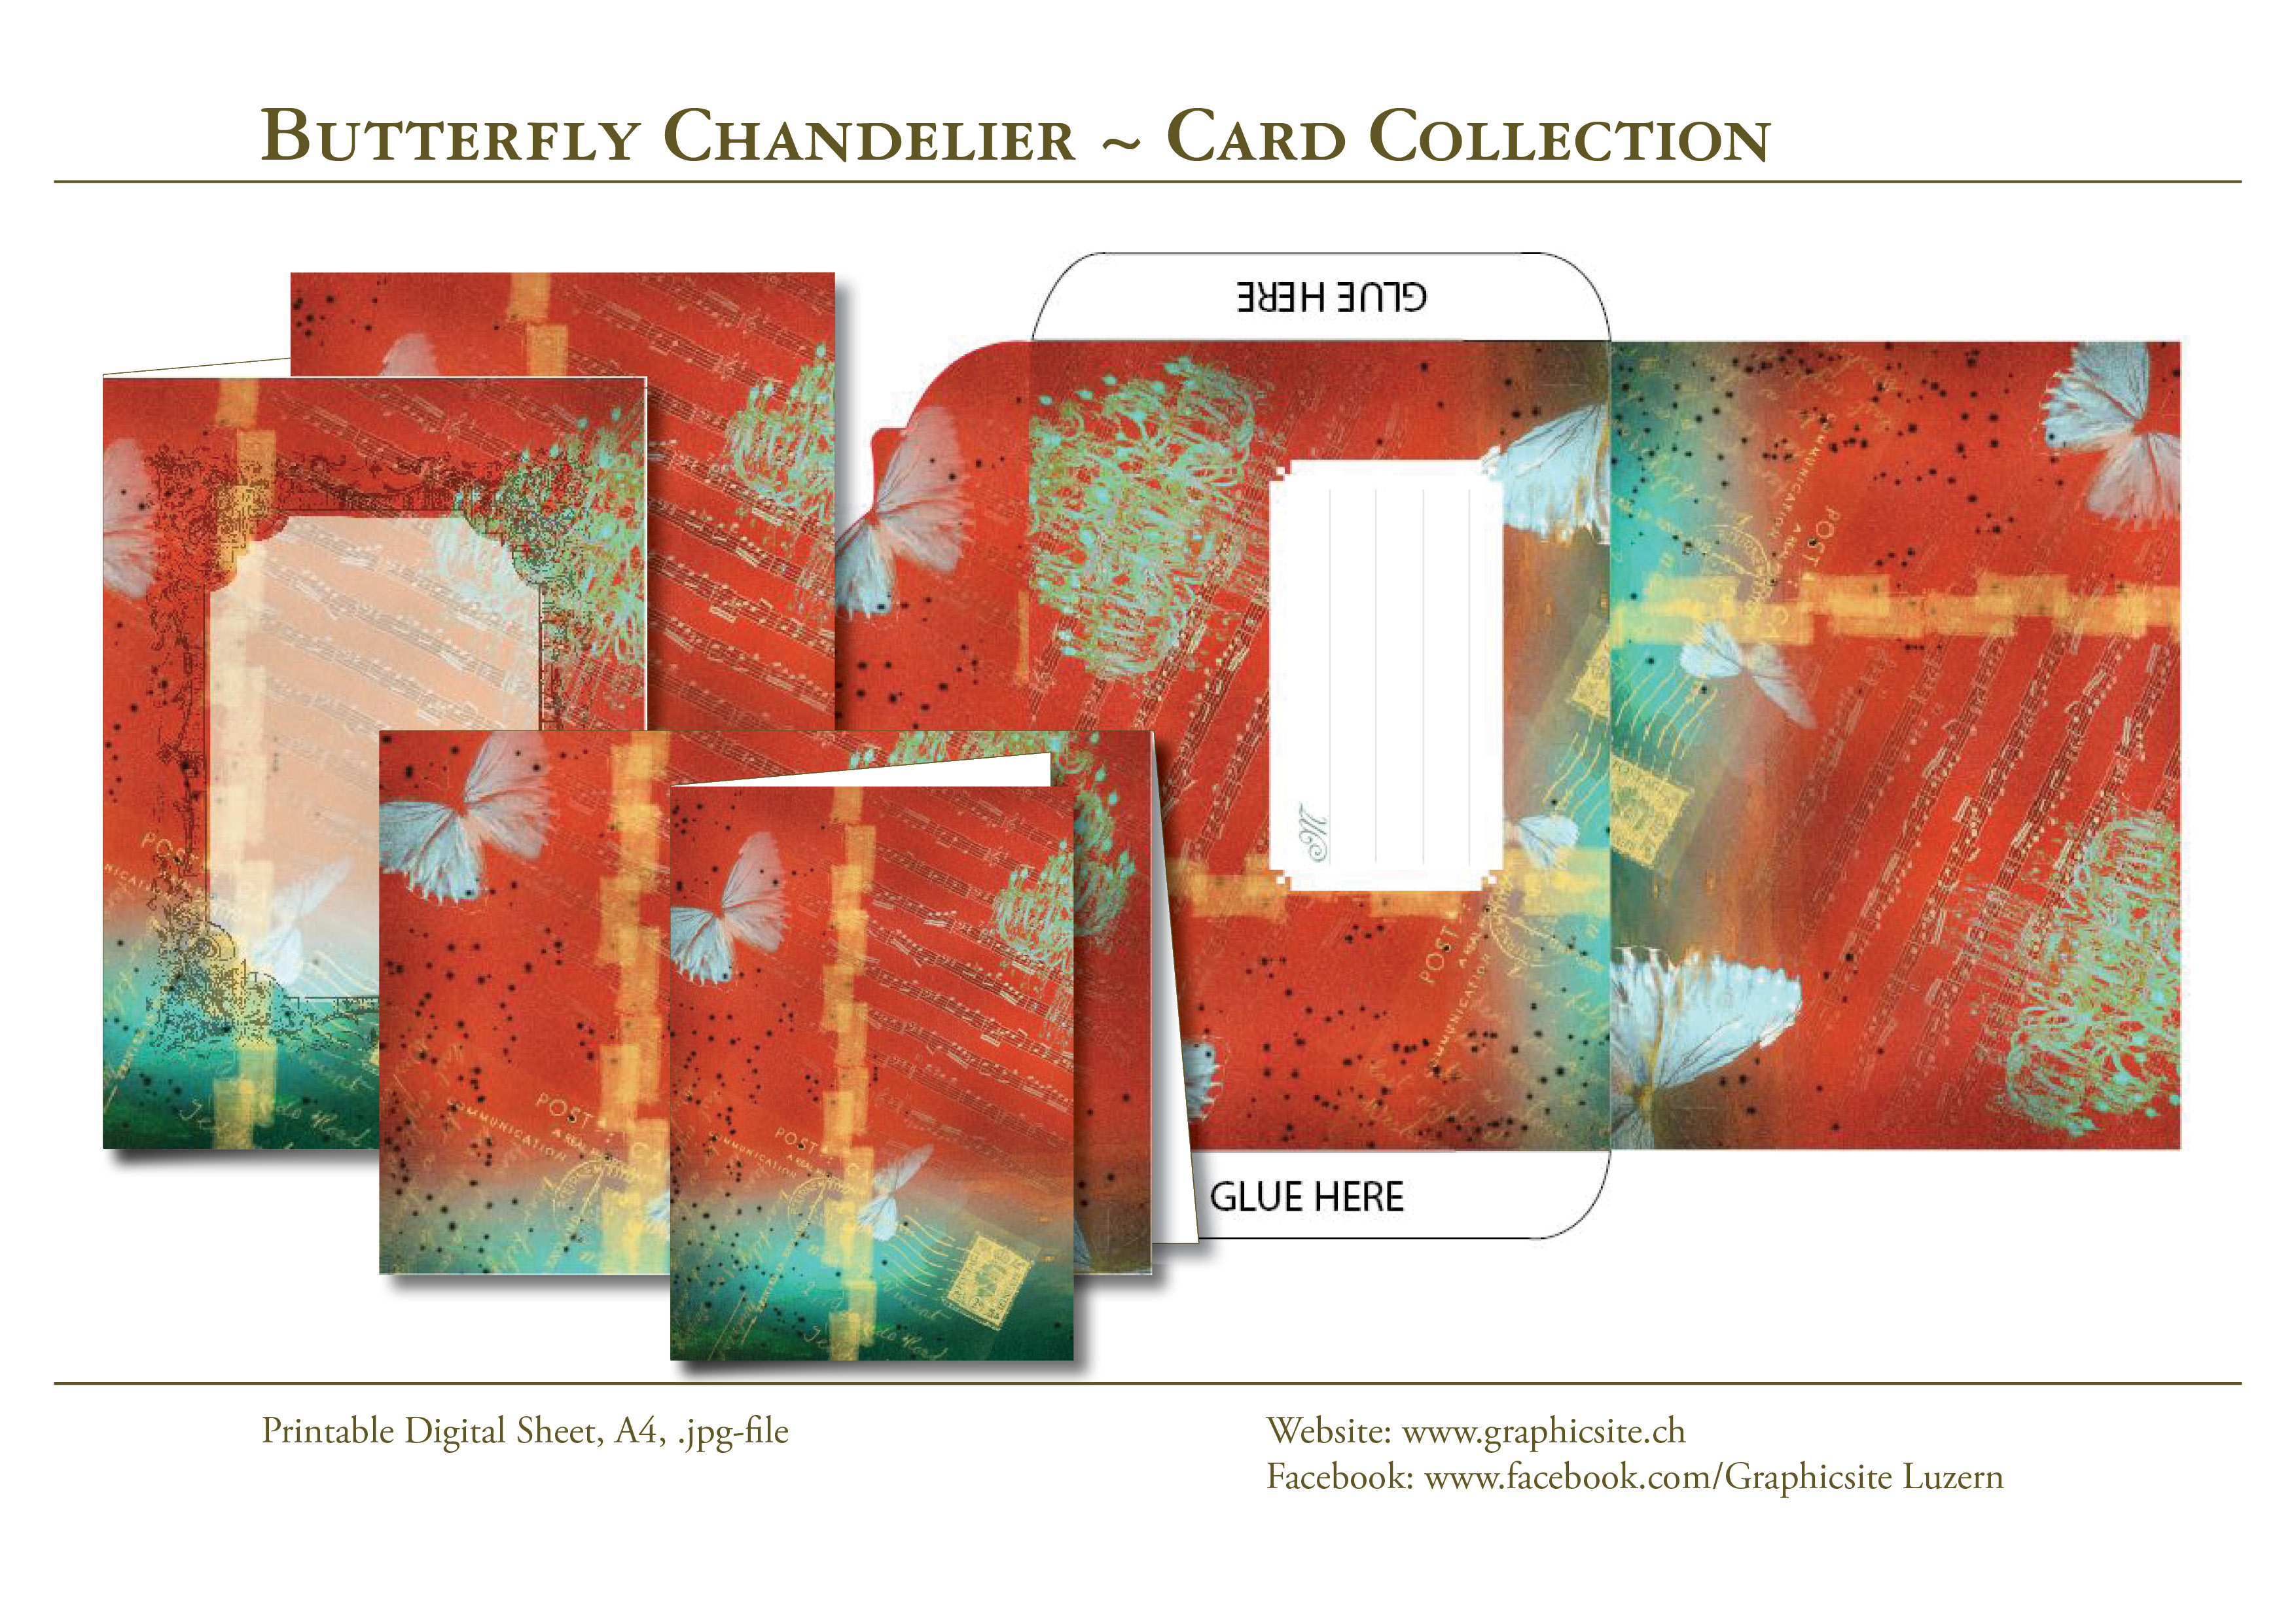 ButterflyChandelier - CardCollection - ArtJournaling - Graphic Design Luzern, Schweiz